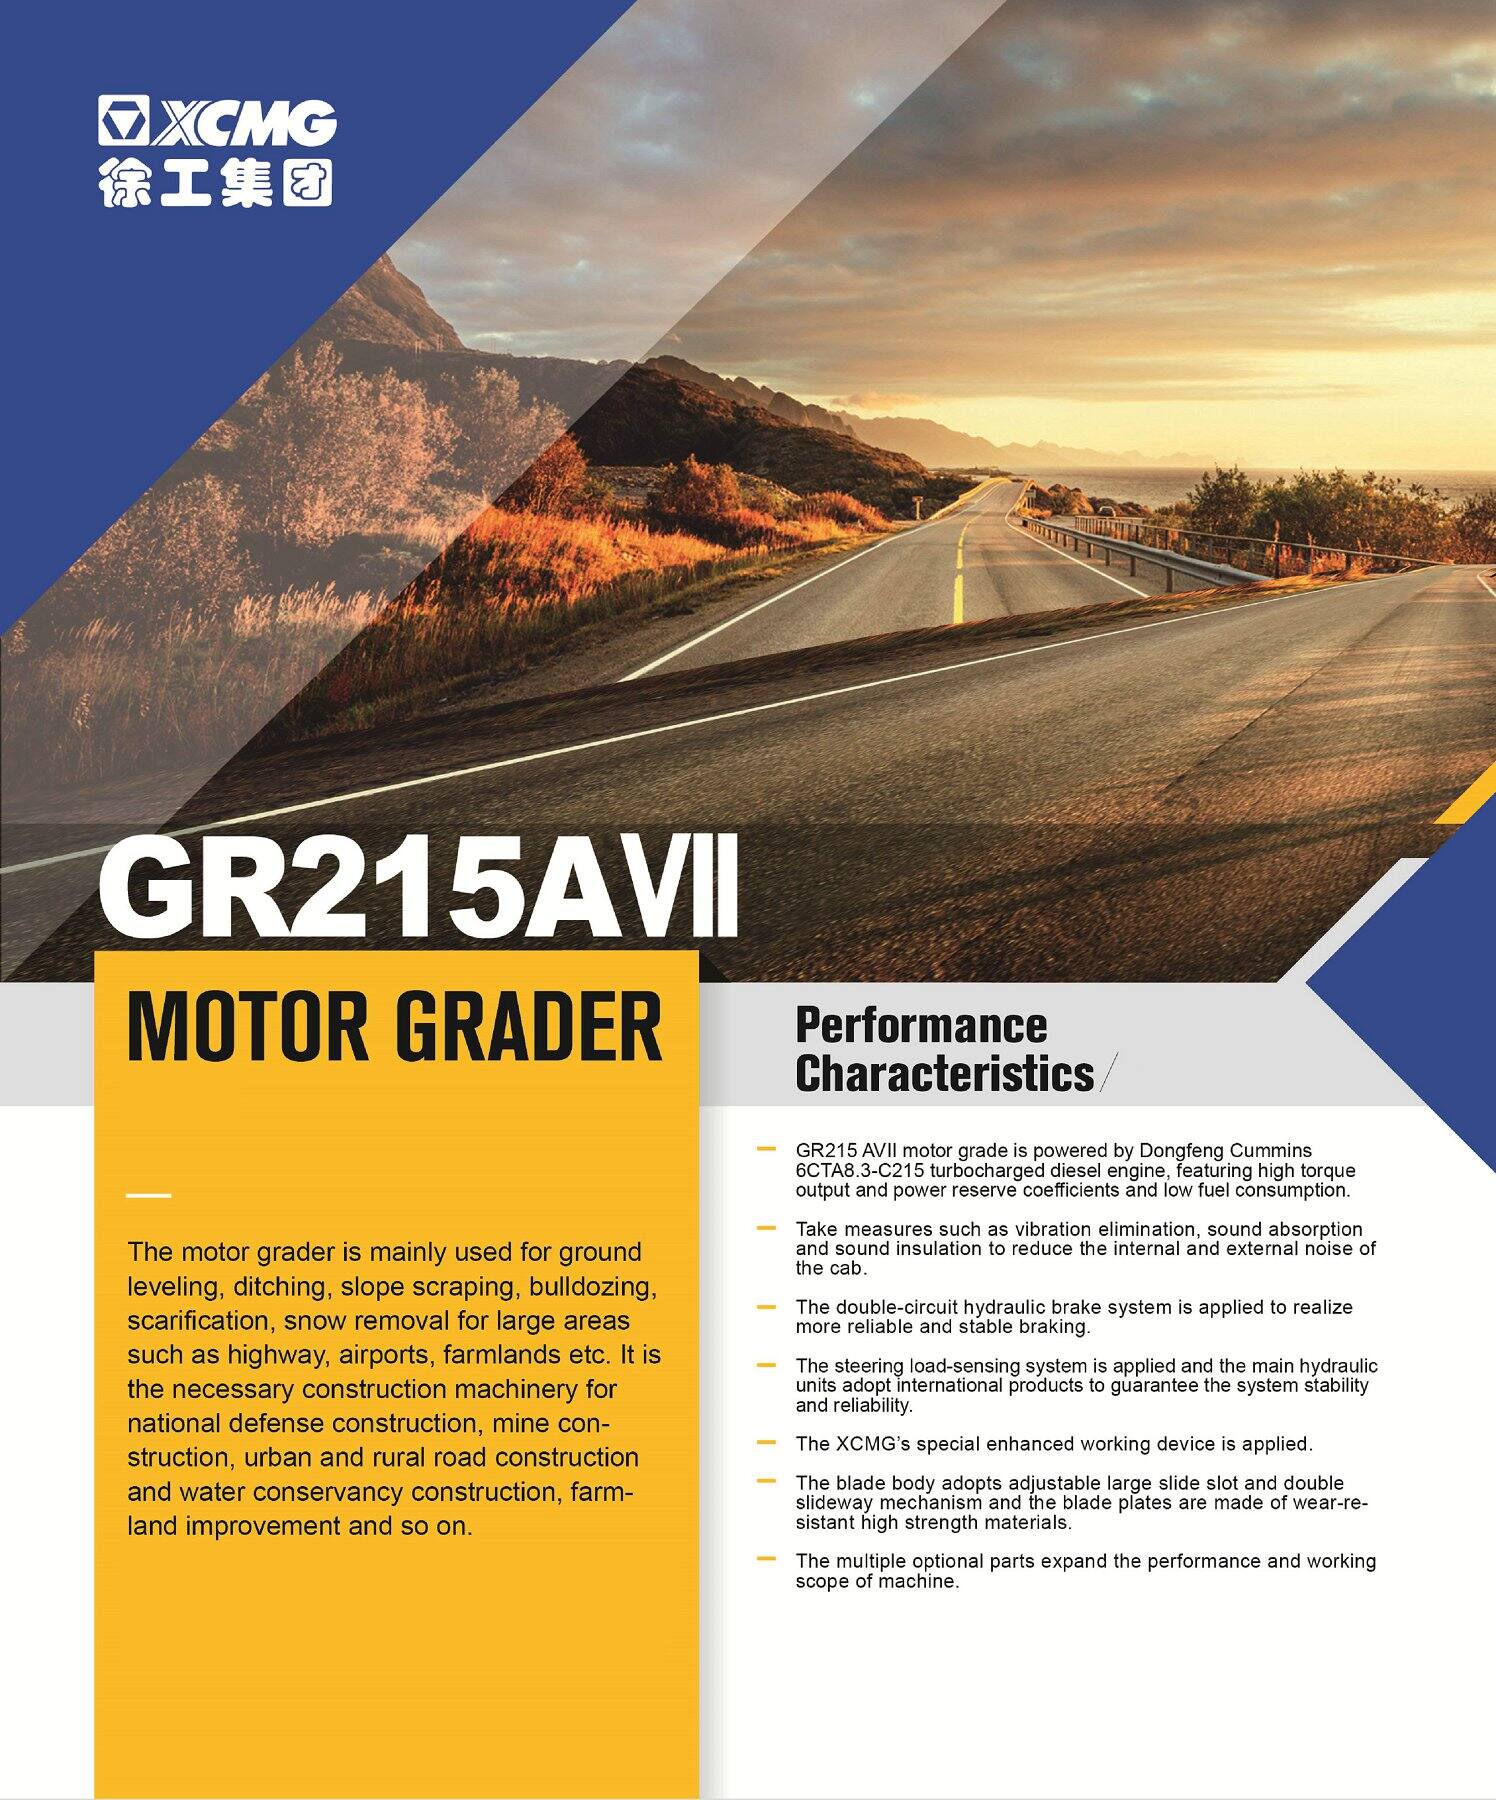 XCMG Official Motor Grader GR215A VII For Sale